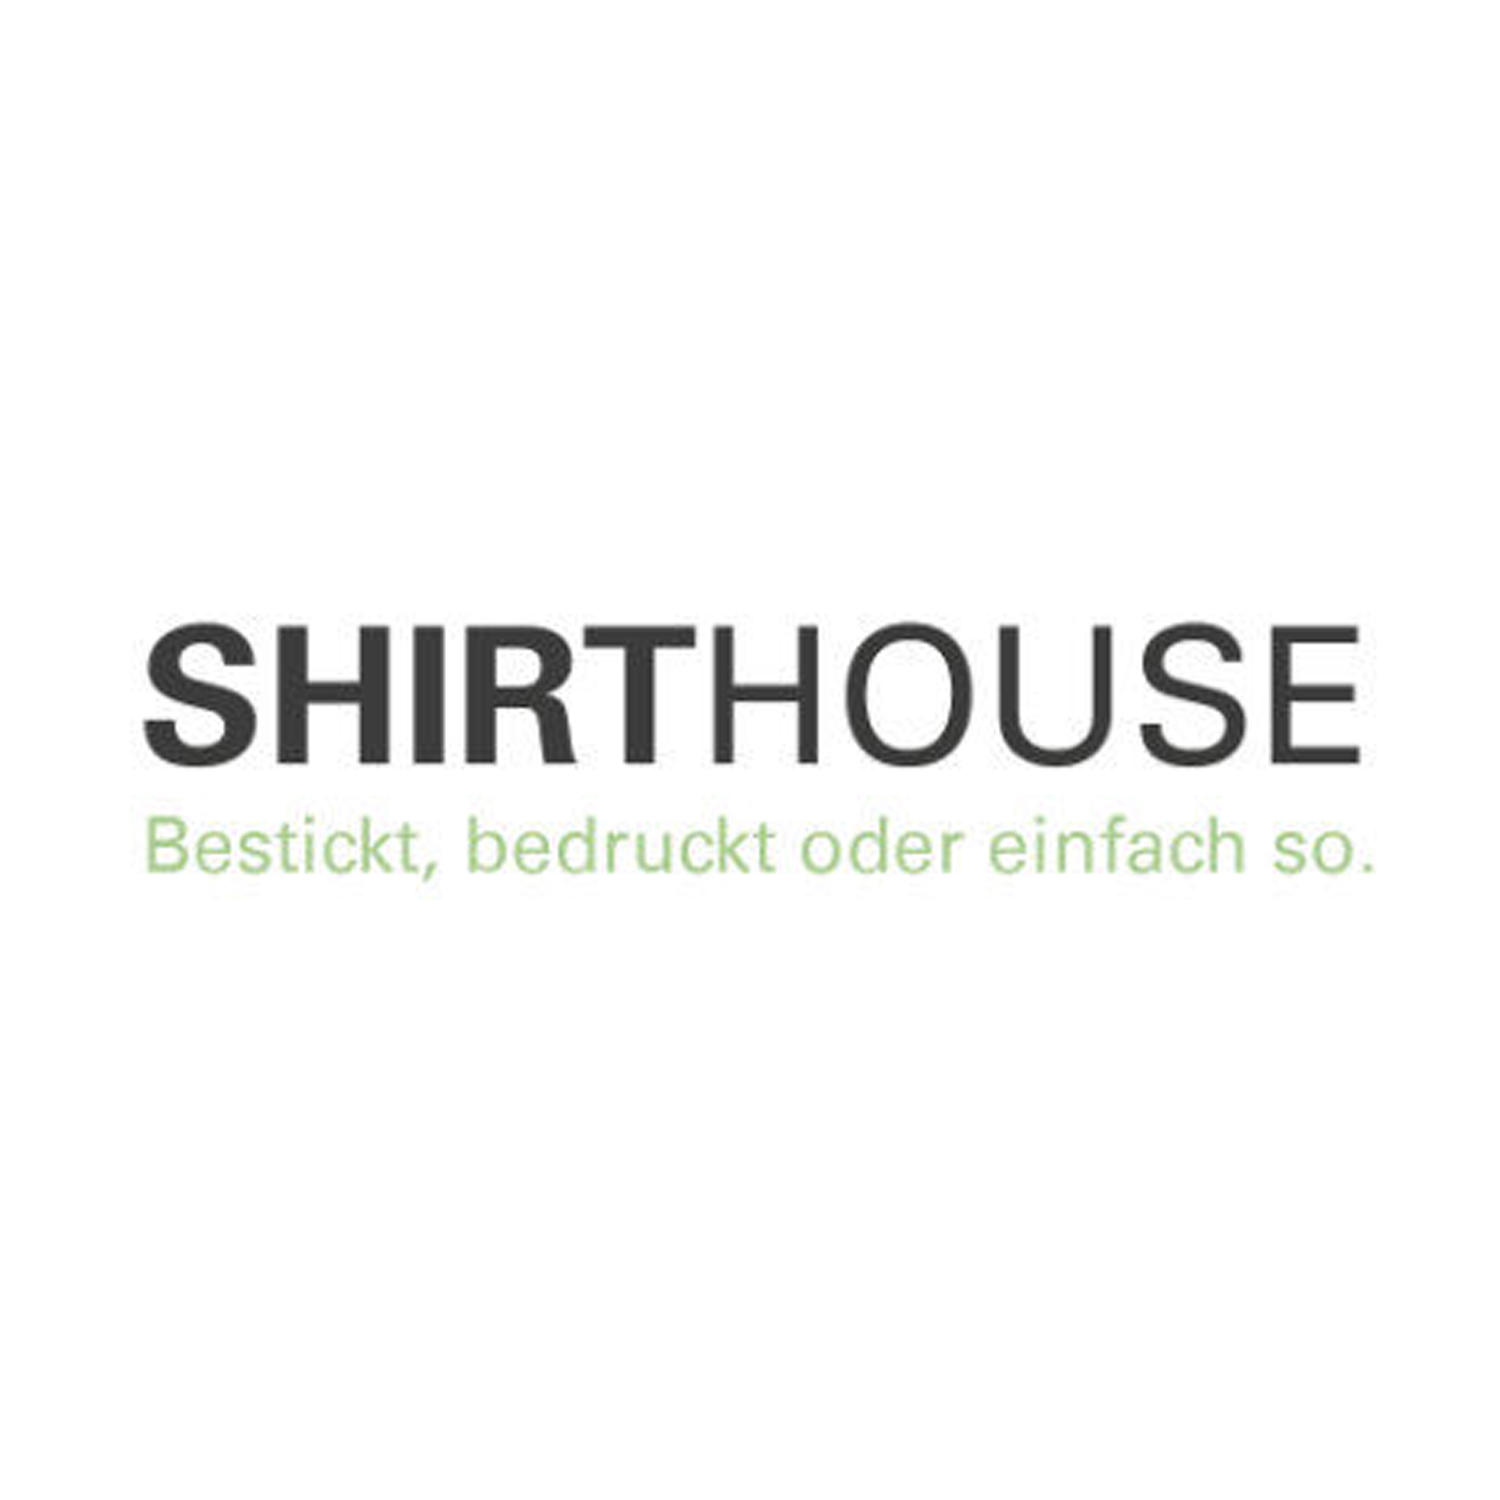 SHIRTHOUSE AG Logo